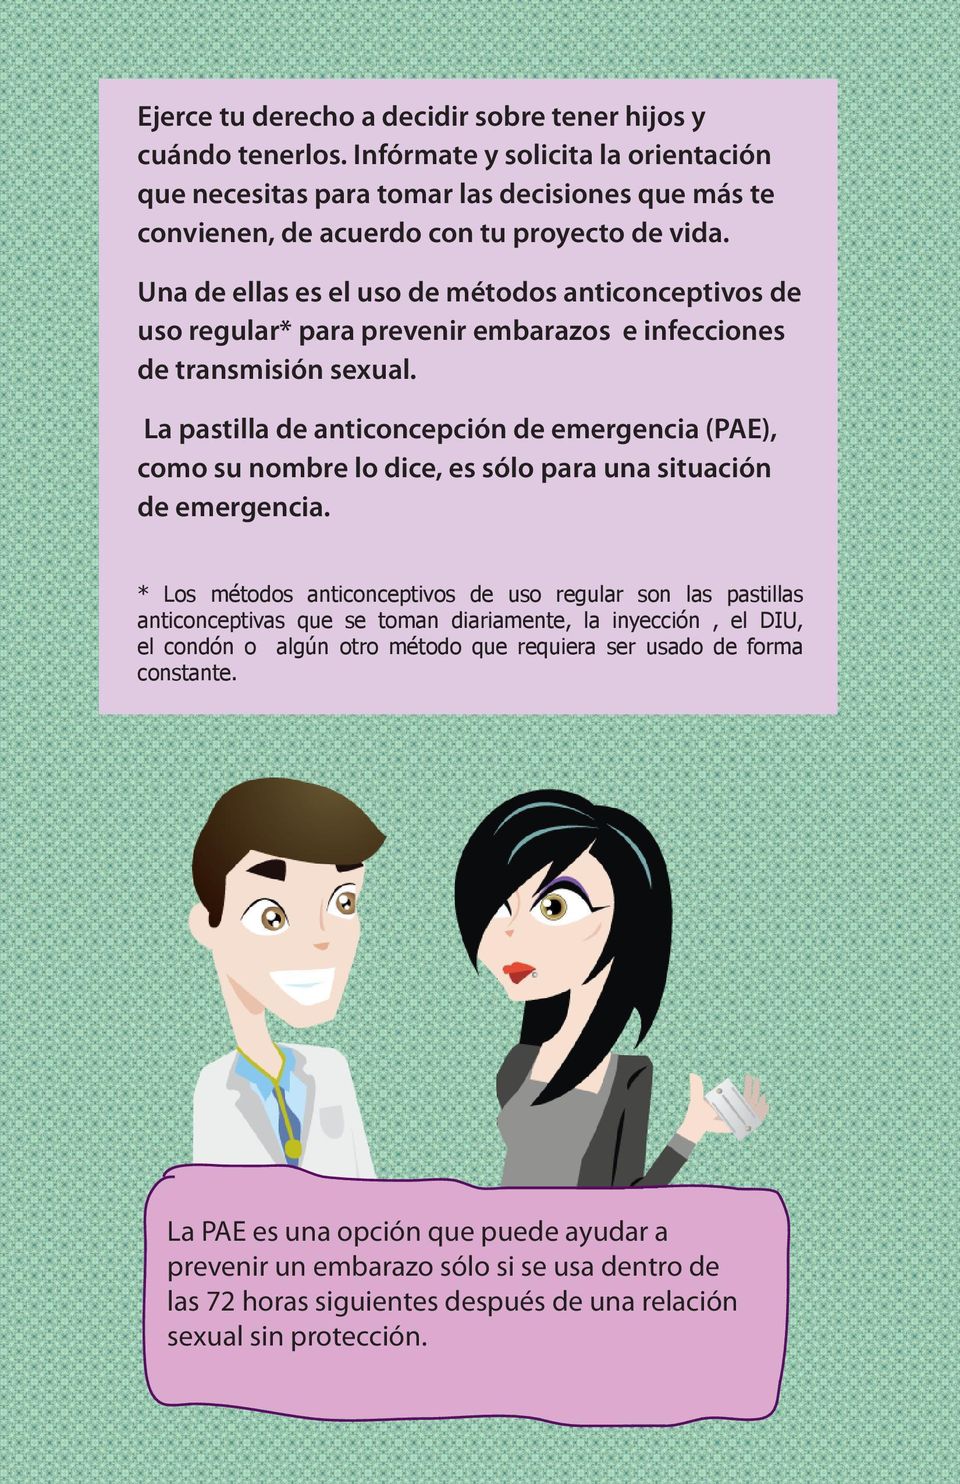 La pastilla de anticoncepción de emergencia (PAE), como su nombre lo dice, es sólo para una situación de emergencia.